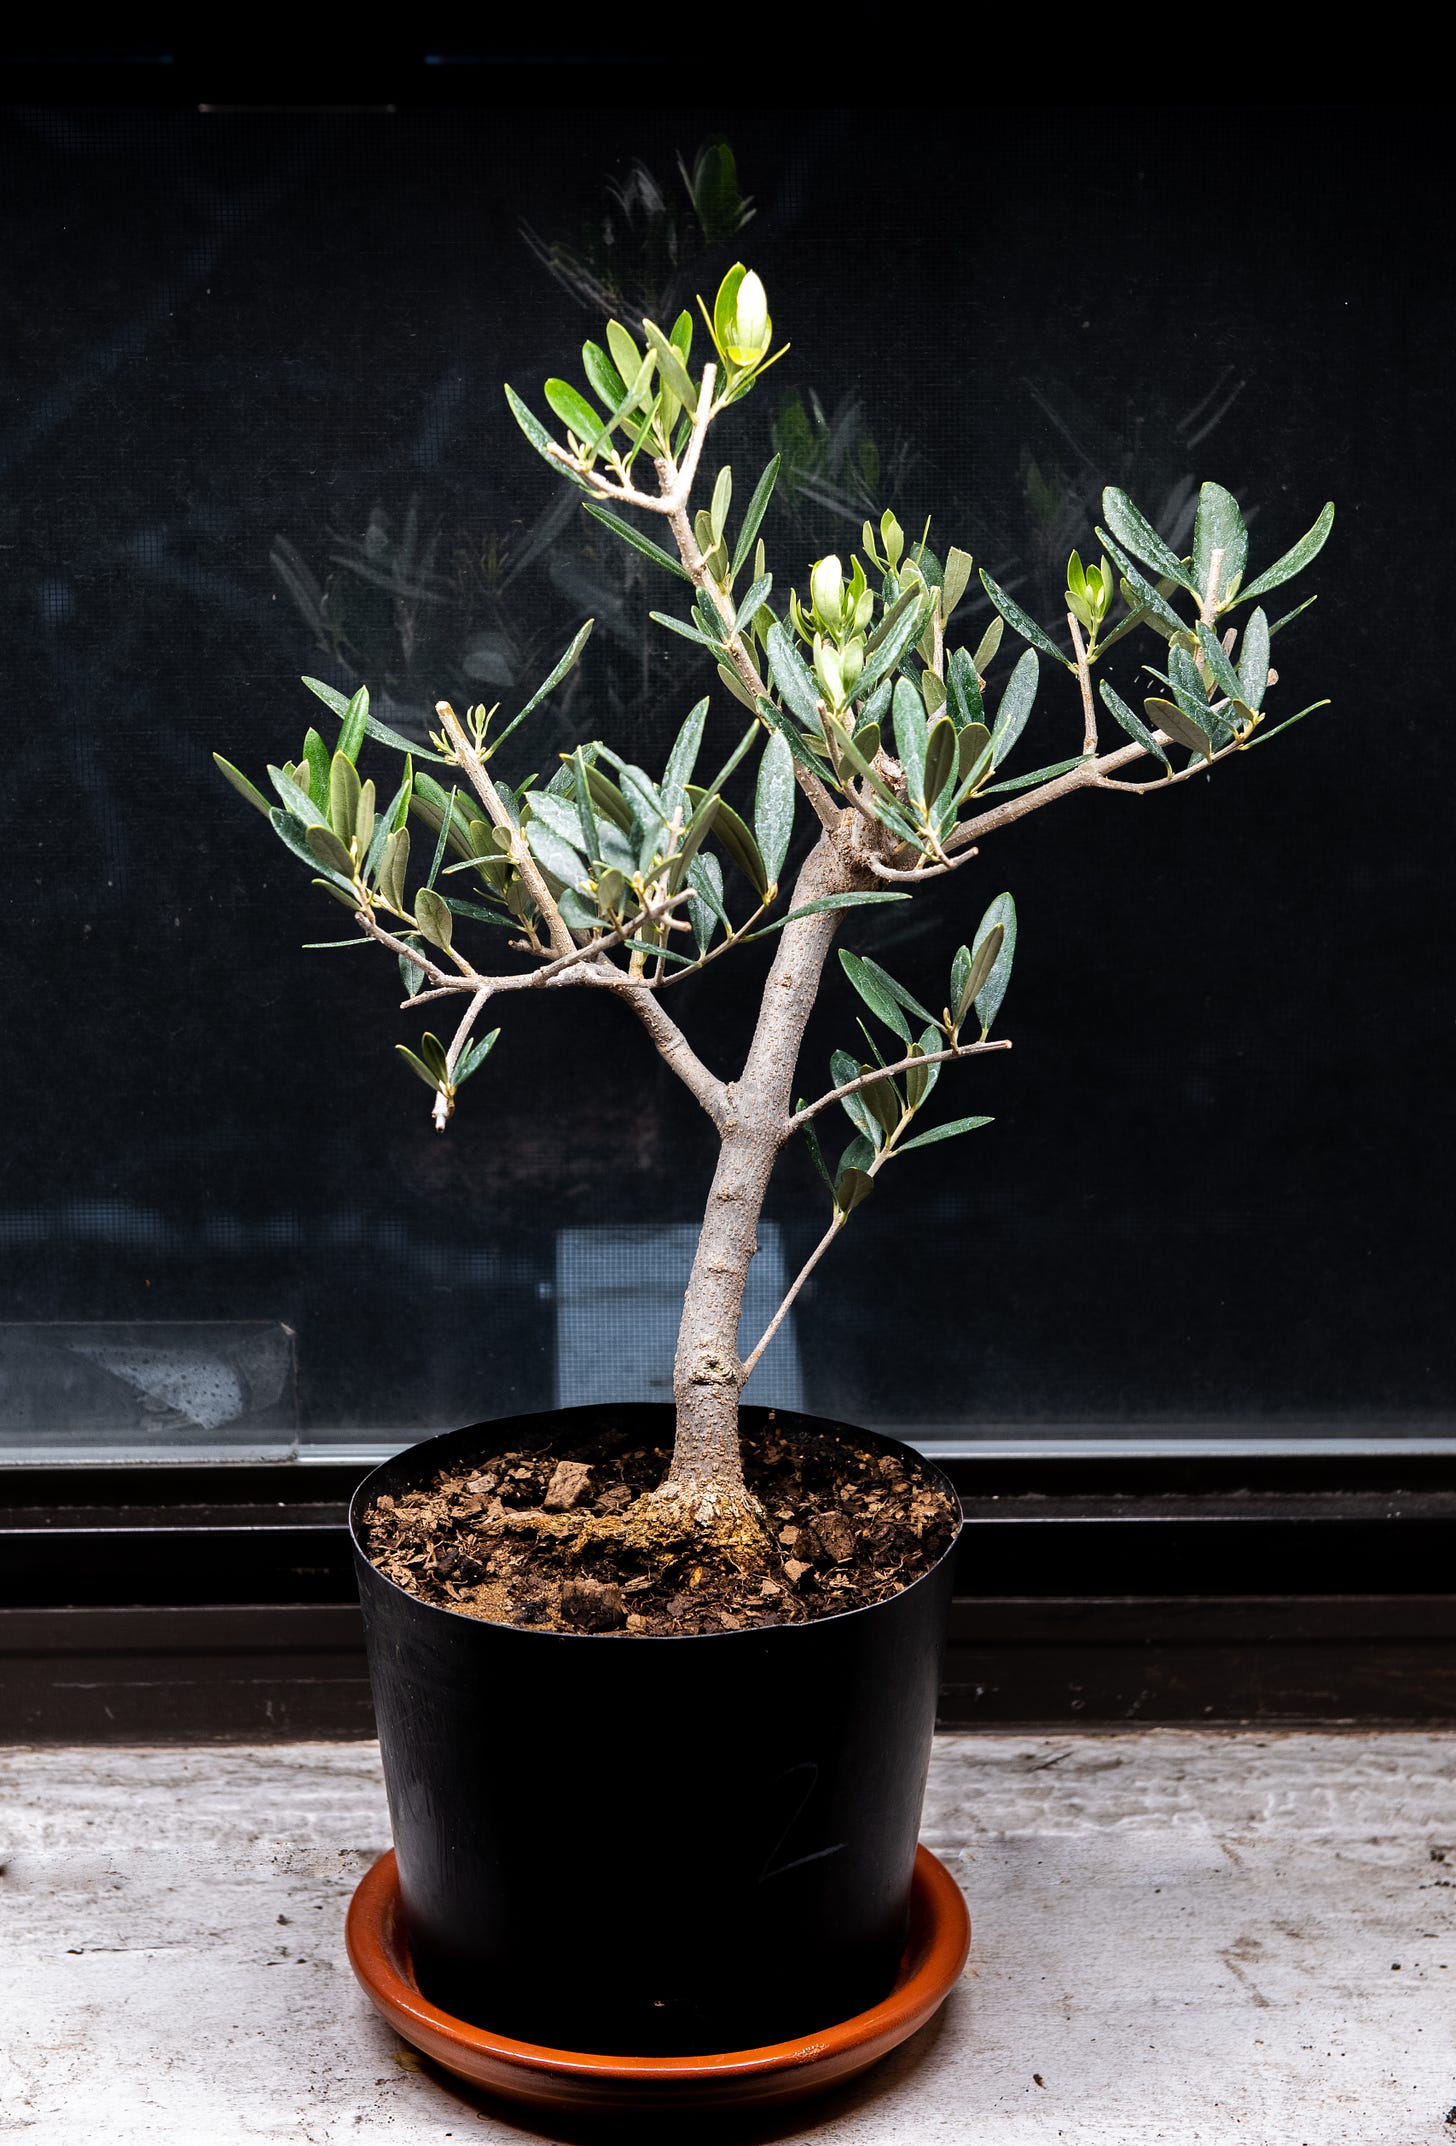 ID: Olive pre bonsai tree on my windowsill under bright light.